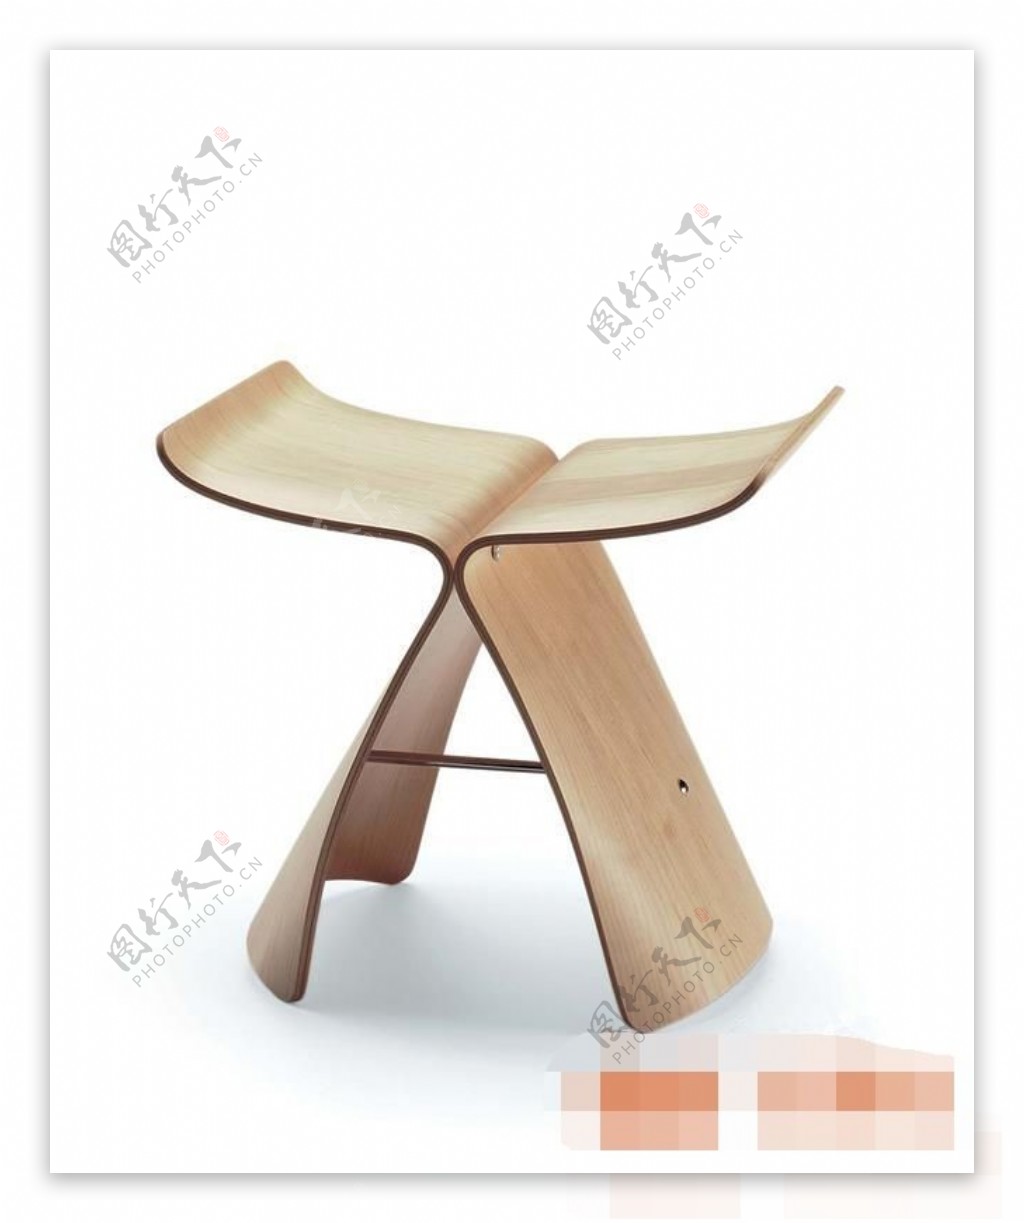 个性简约现代风格椅子素材